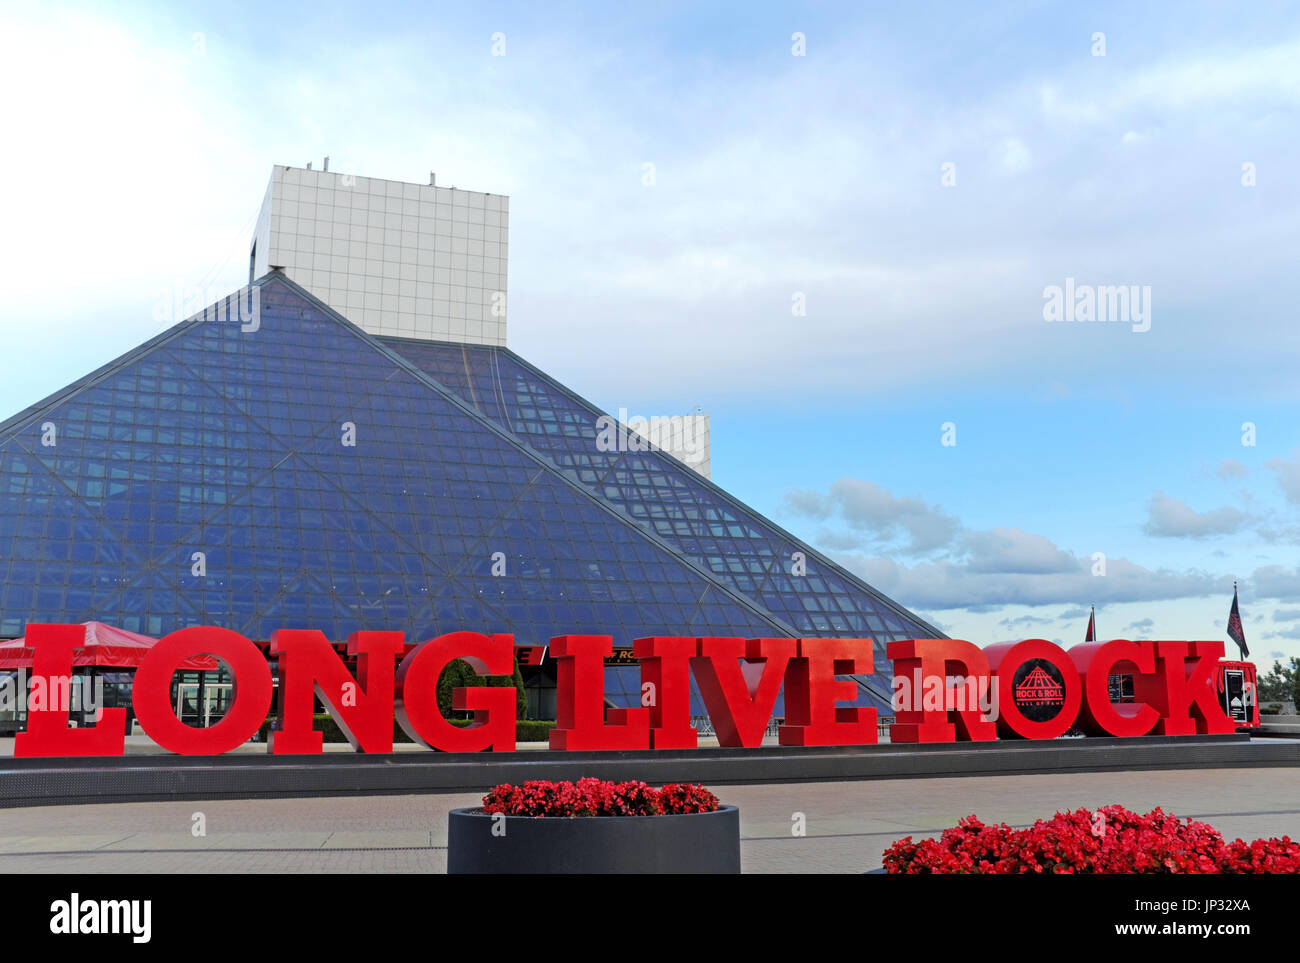 El Rock and Roll Hall of Fame en Cleveland, Ohio, fue diseñado por I.M. Pei convirtiéndose en uno de los principales destinos turísticos en el medio oeste de los Estados Unidos. Foto de stock